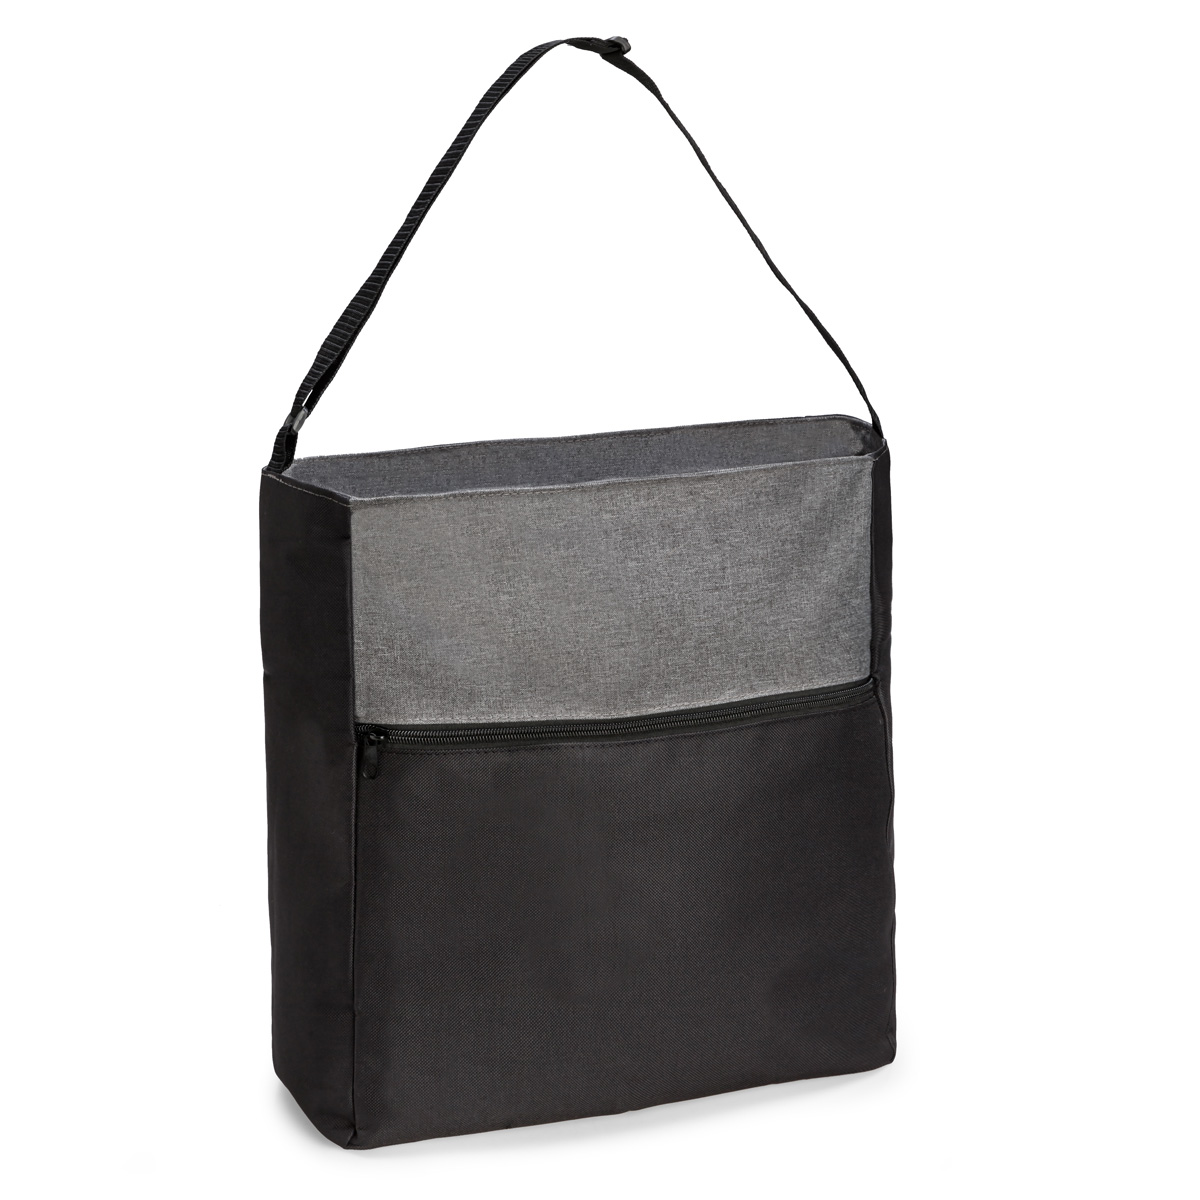 Harlow Shoulder Bag Product Image